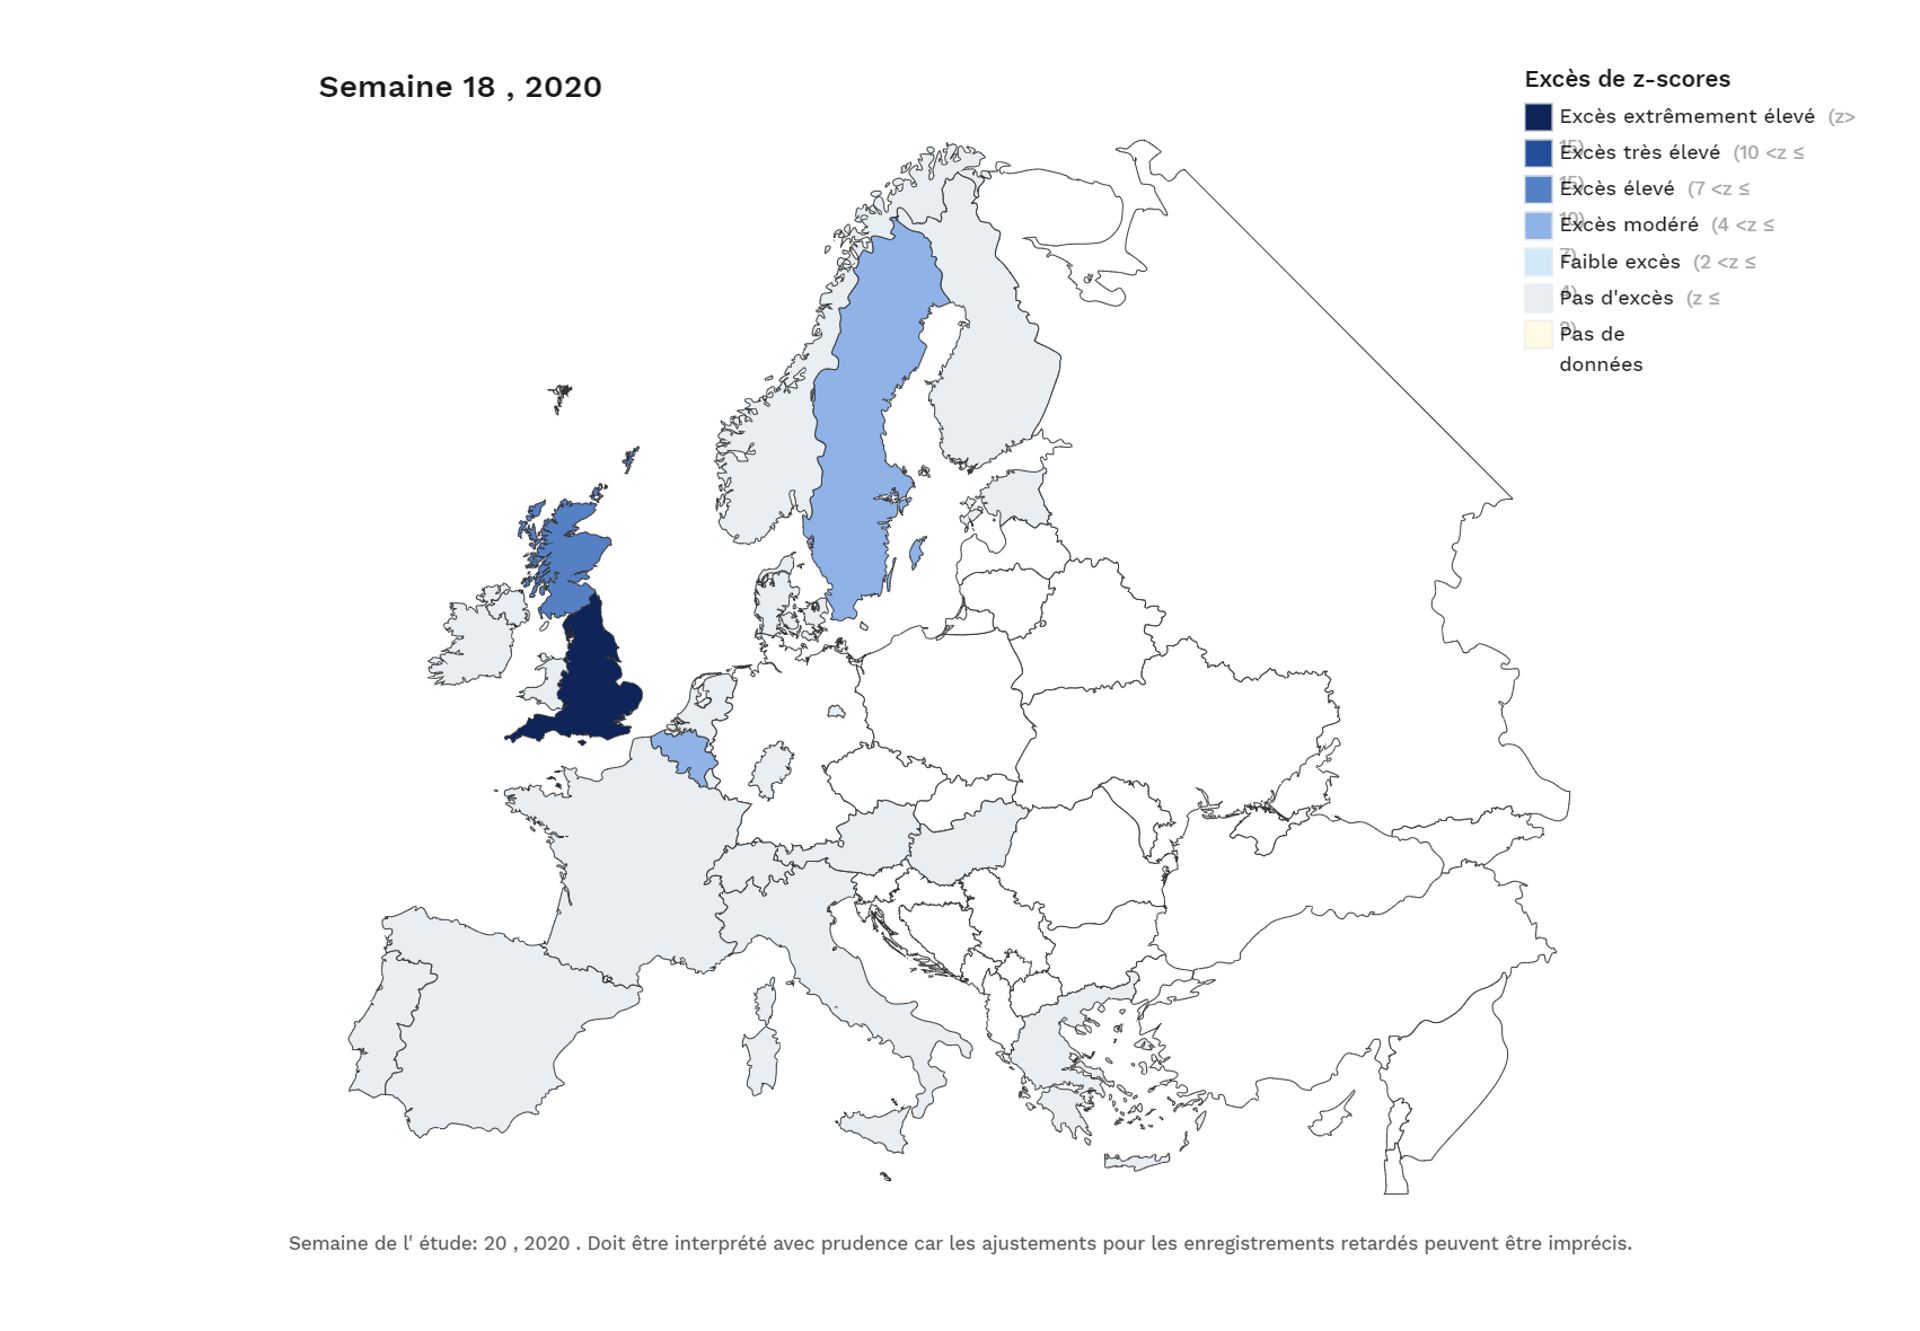 Sans confinement, la Suède a fini par devenir le pays où la mortalité liée au coronavirus est la plus élevée